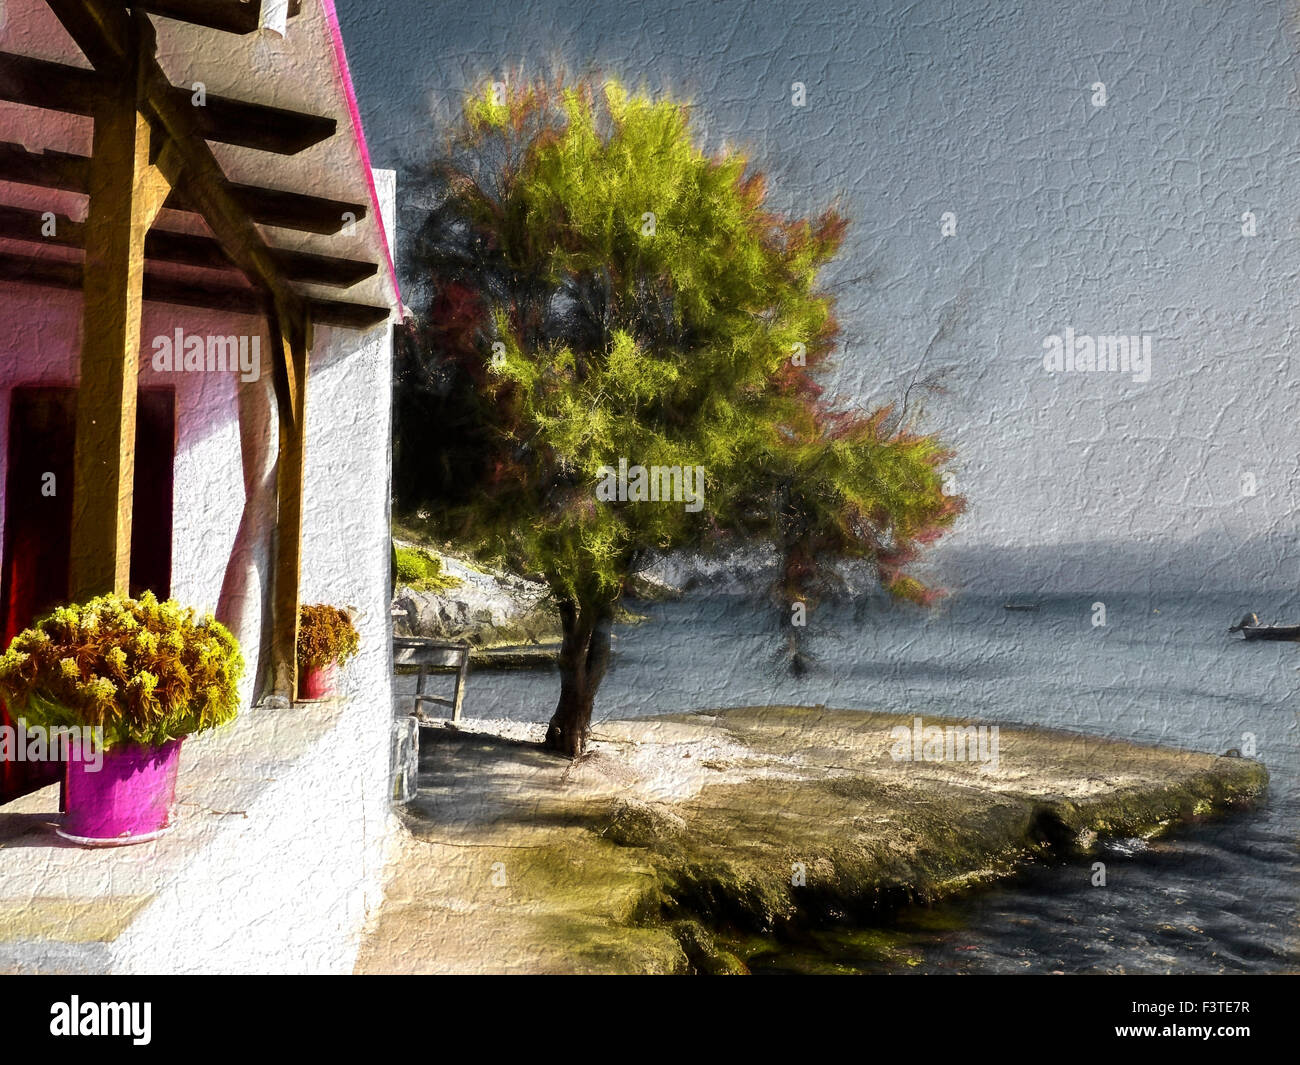 Maison proche de la mer, l'été à l'île de Milos, seascape Grèce - effet Peinture Banque D'Images